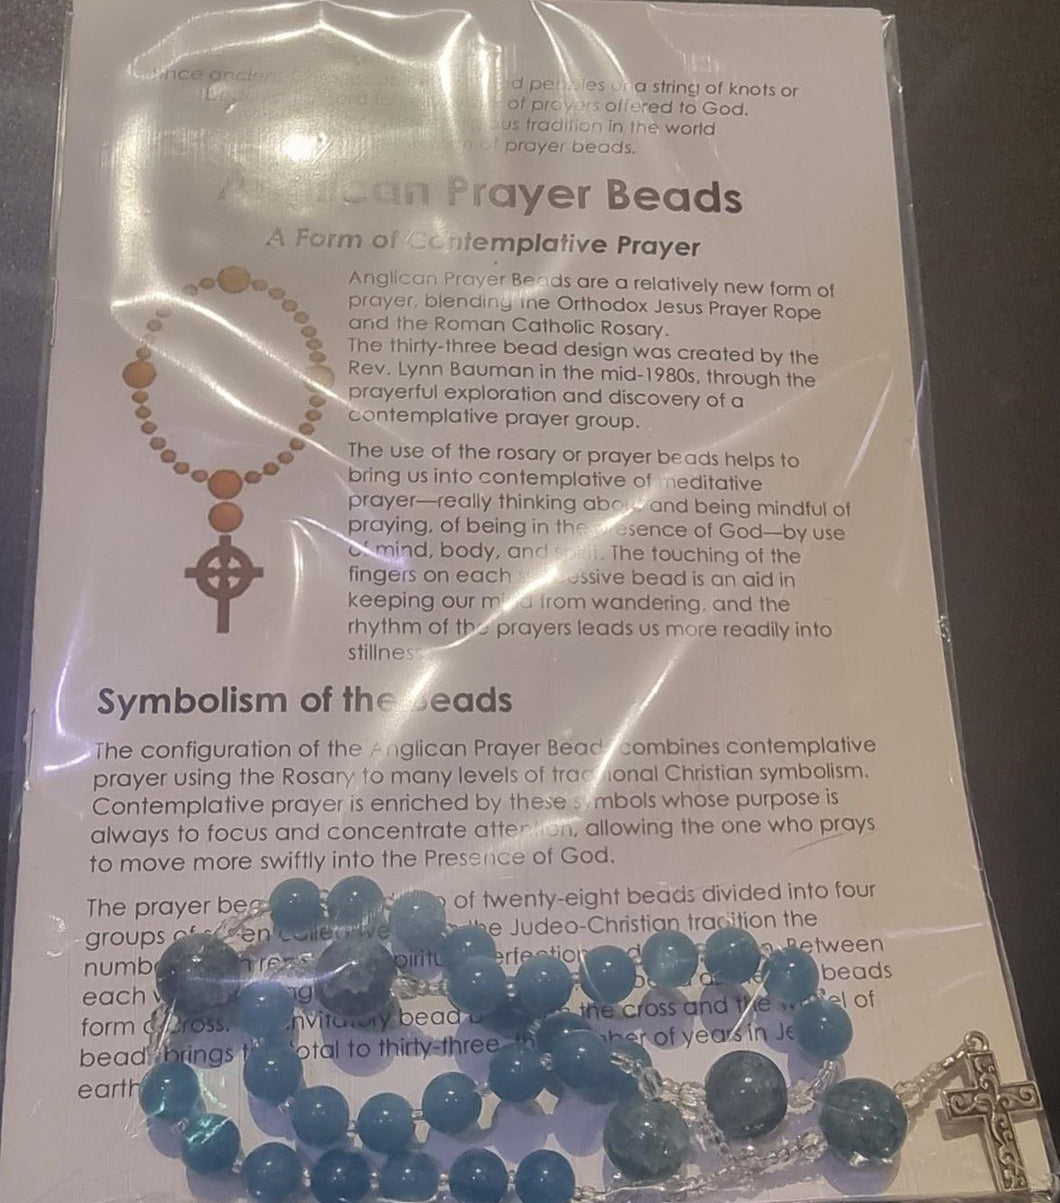 Anglican Prayer Beads